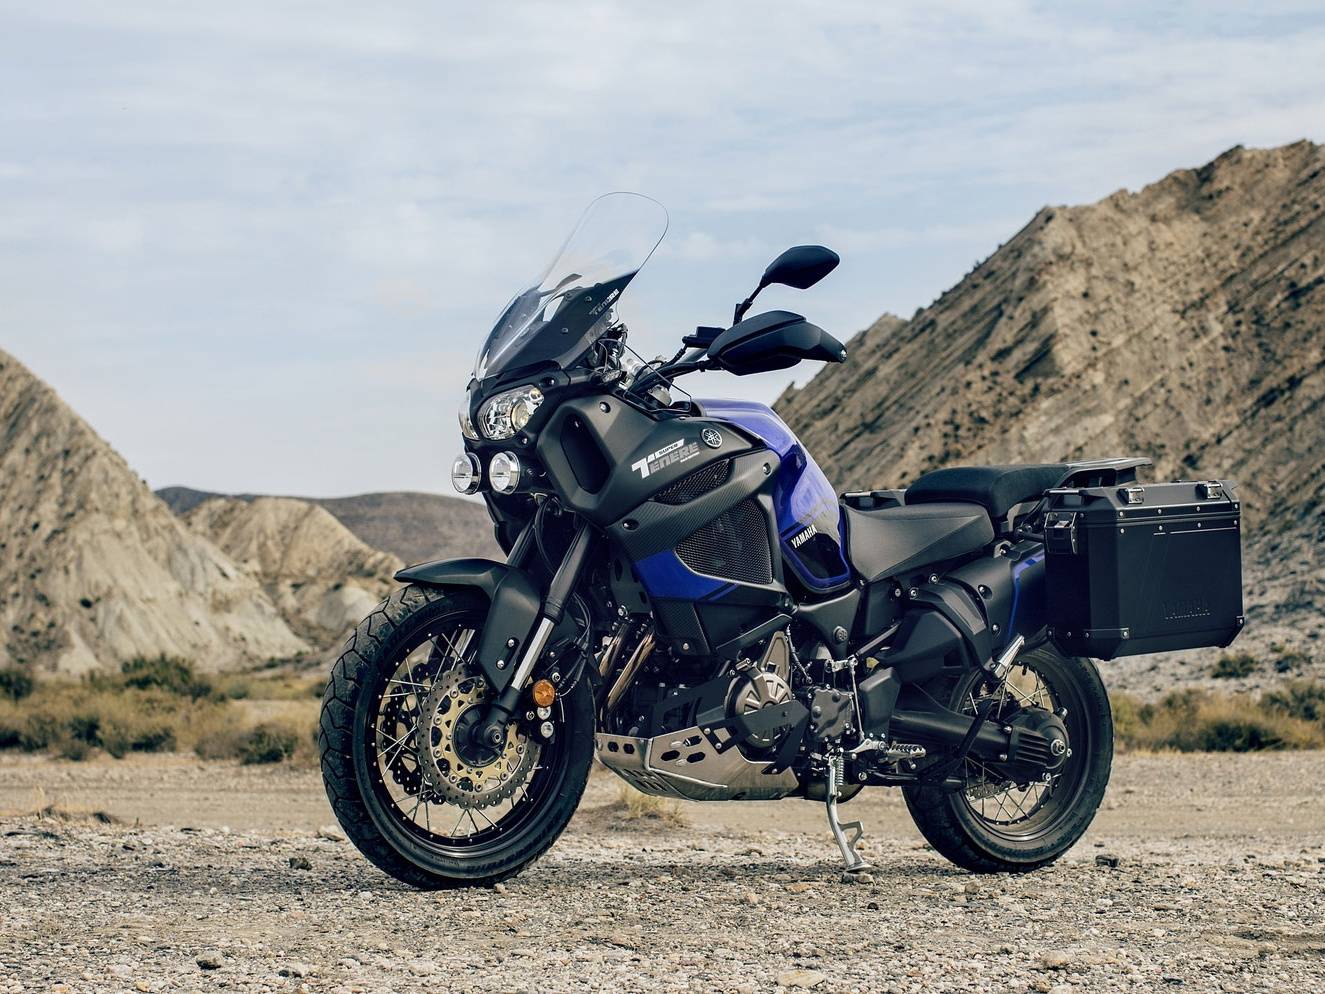 Novinka 2018 - Yamaha XT1200ZE Super Ténéré Raid Edition